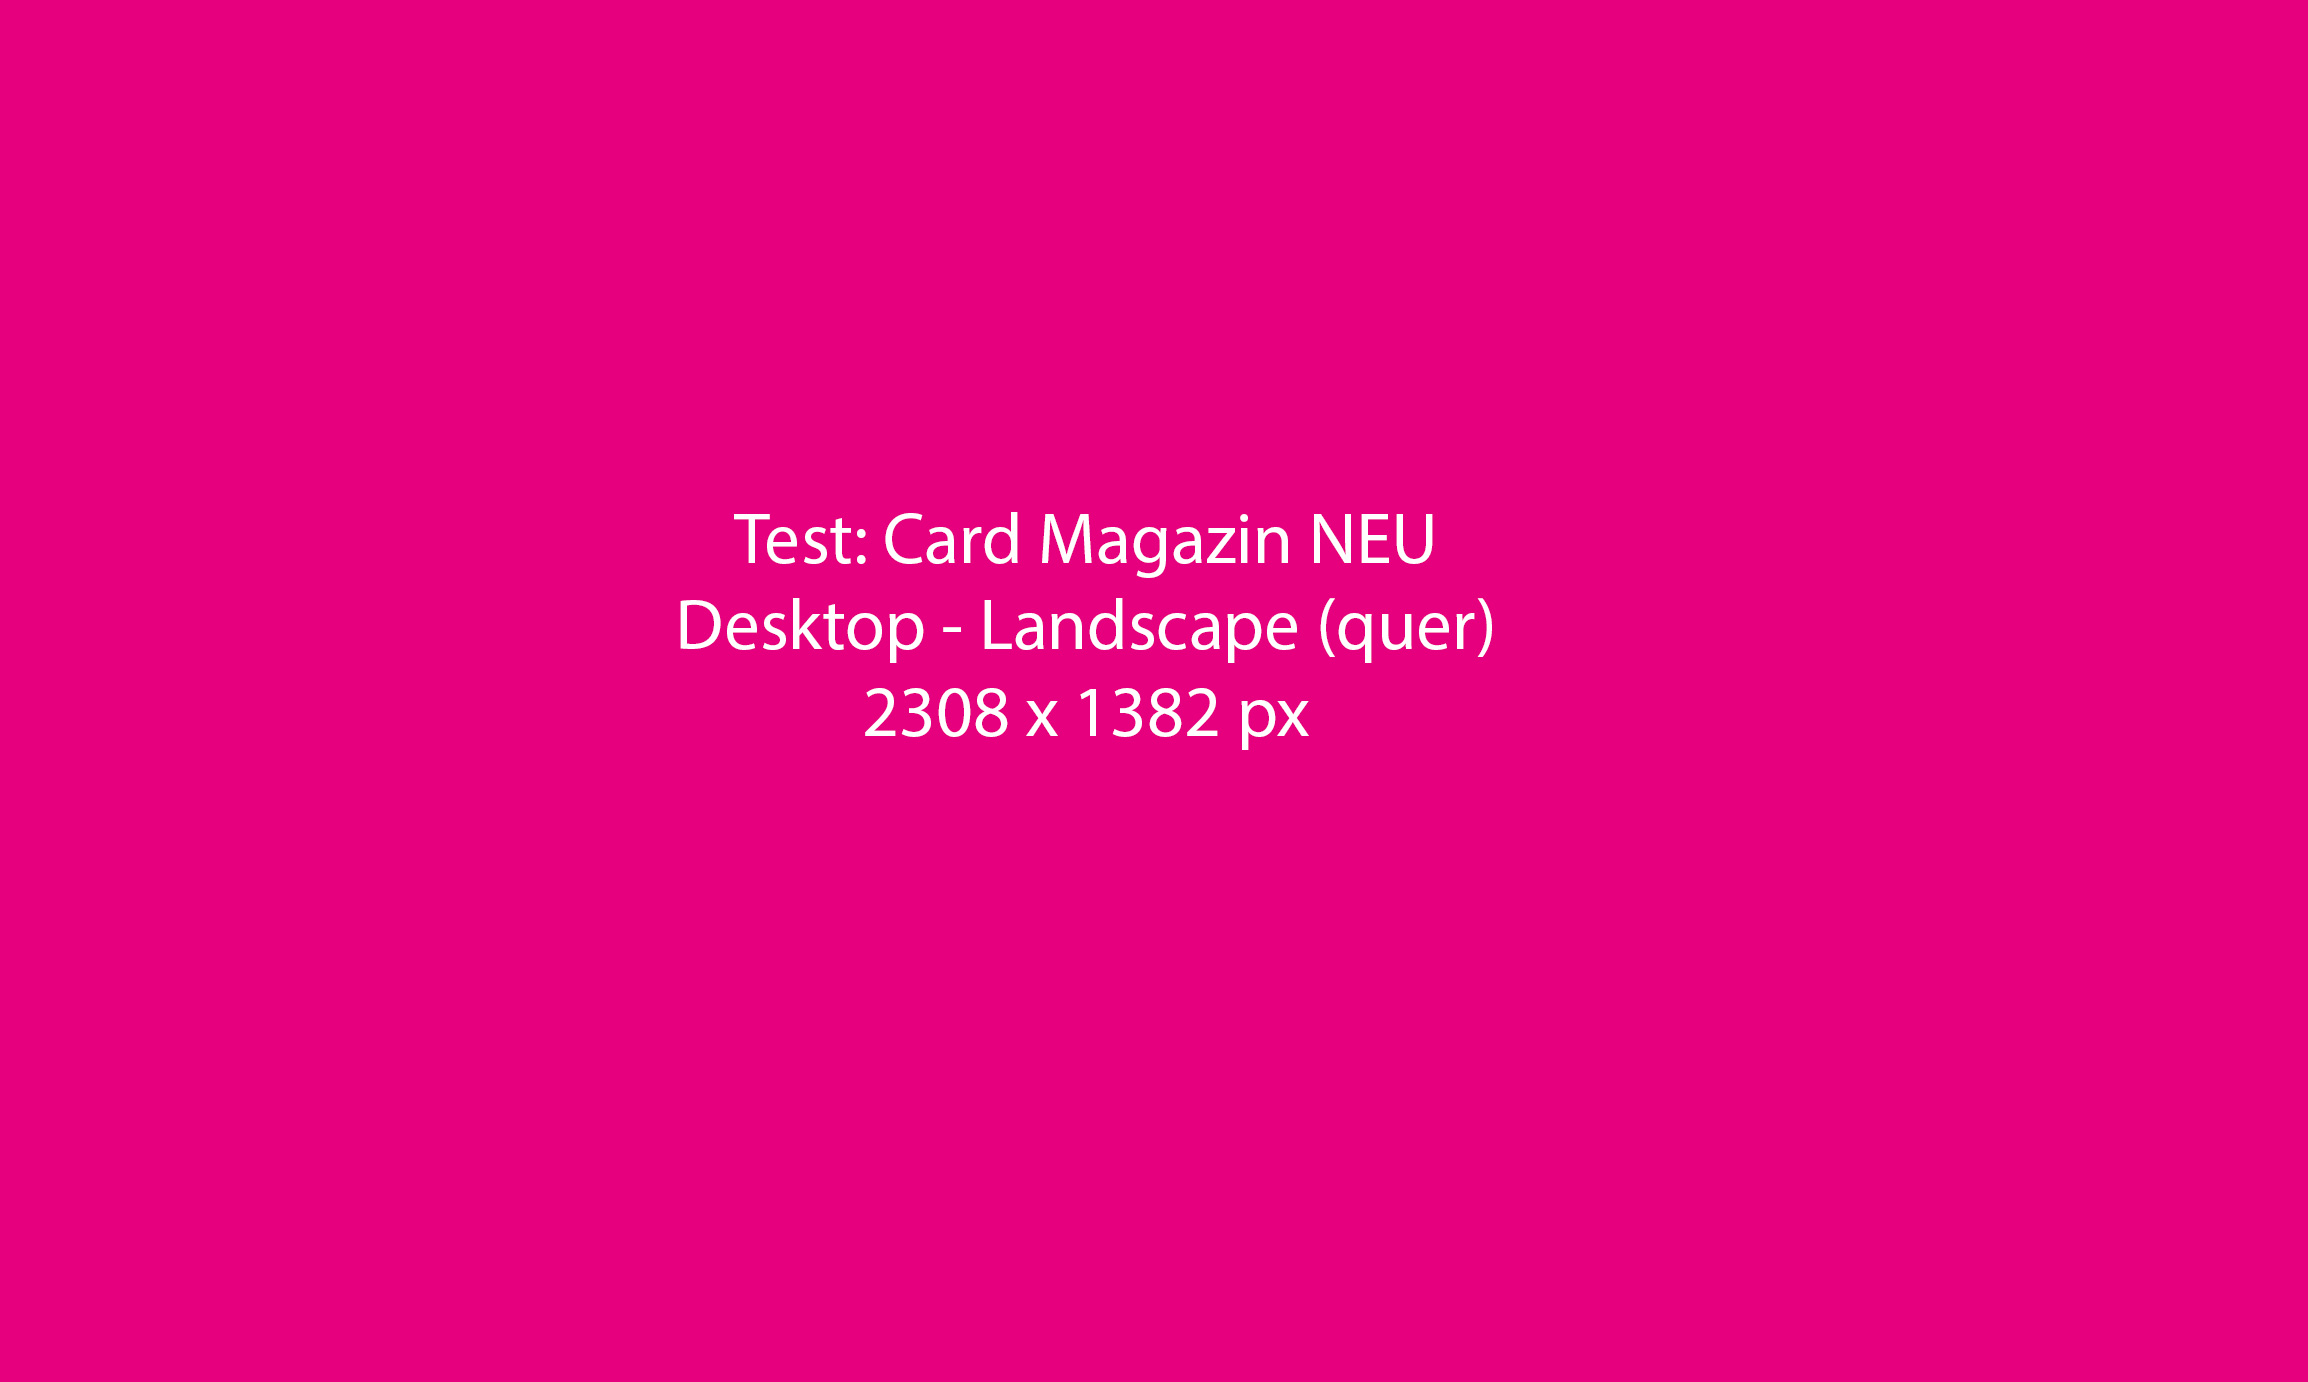 mt-Test-Desk-Landscape-quer-2308x1382px.jpg